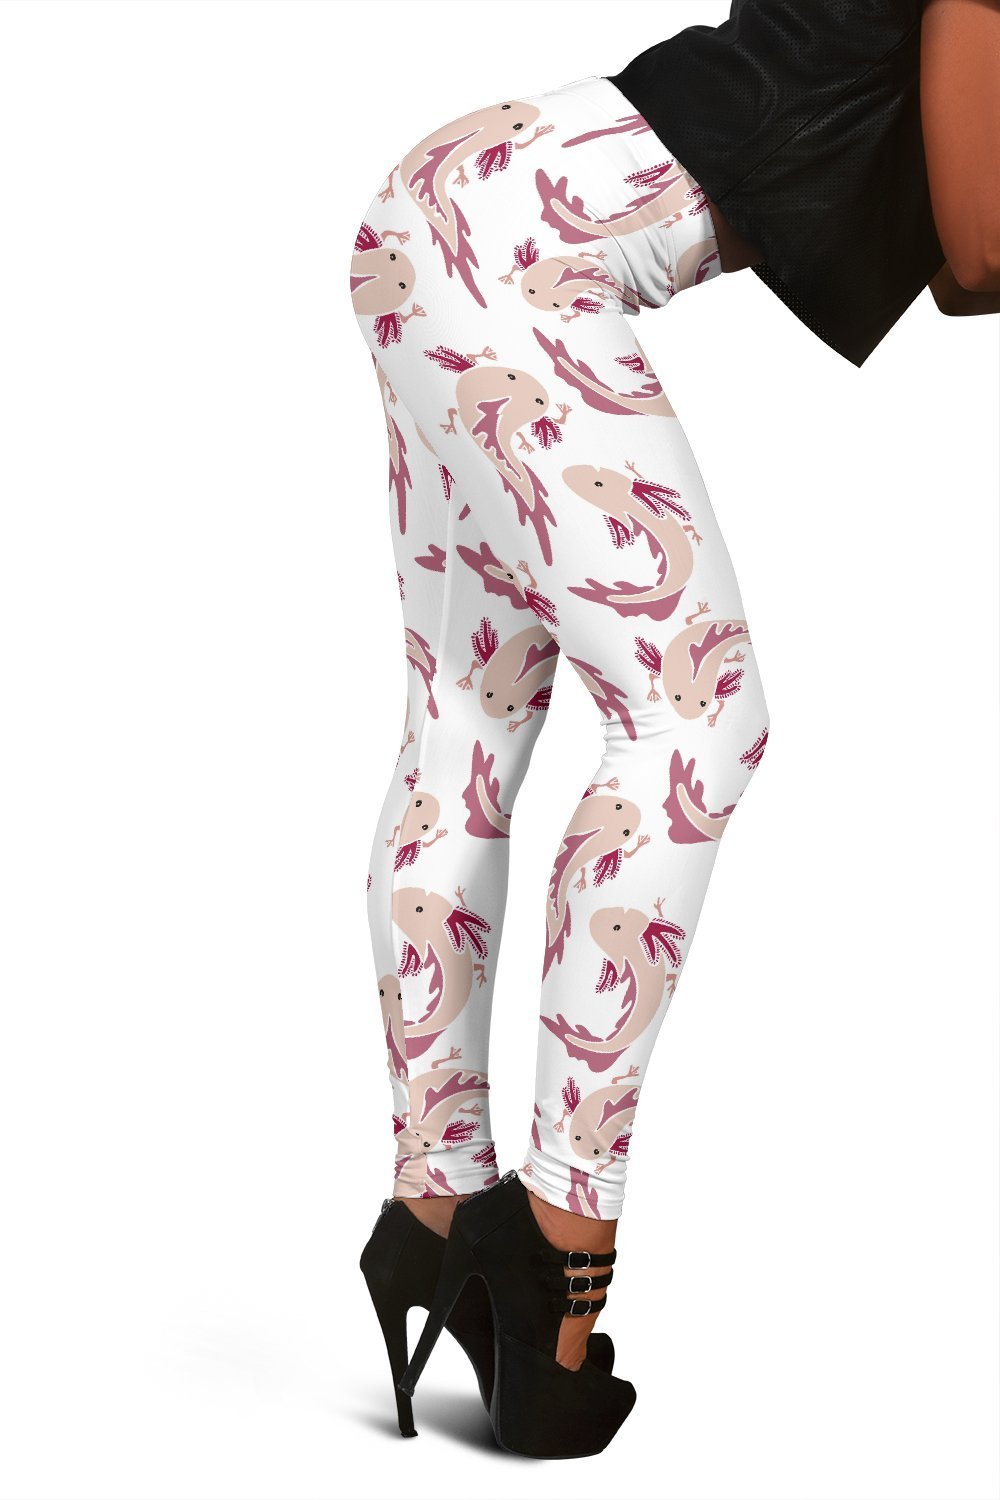 Axolotl White Pattern Print Women Leggings-grizzshop